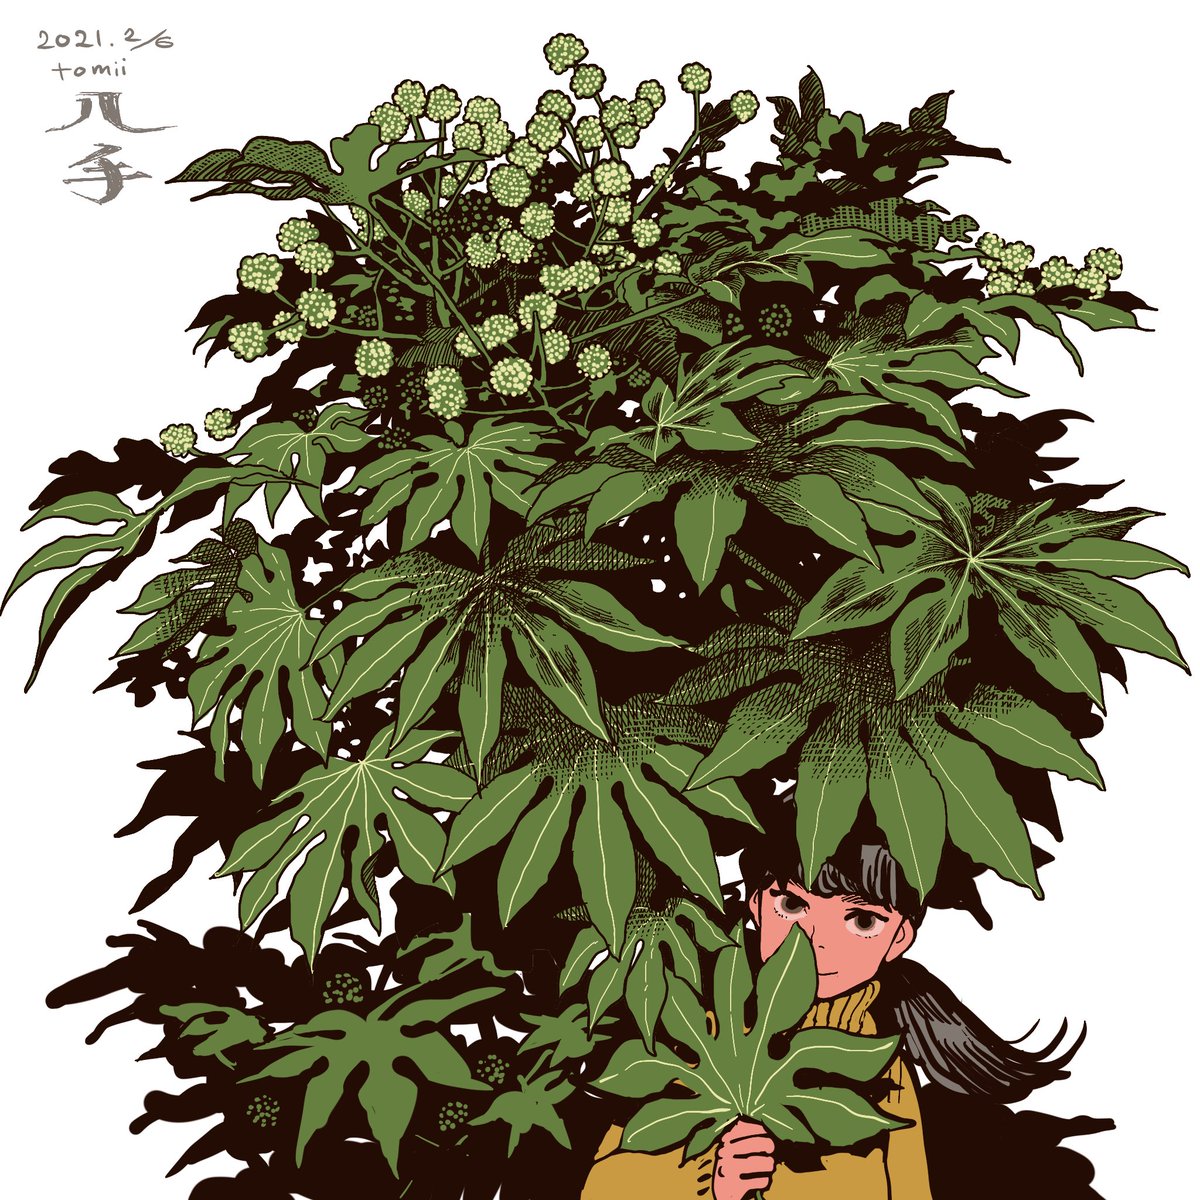 「今日大きい八手の葉っぱ拾った。 」|トミイマサコのイラスト